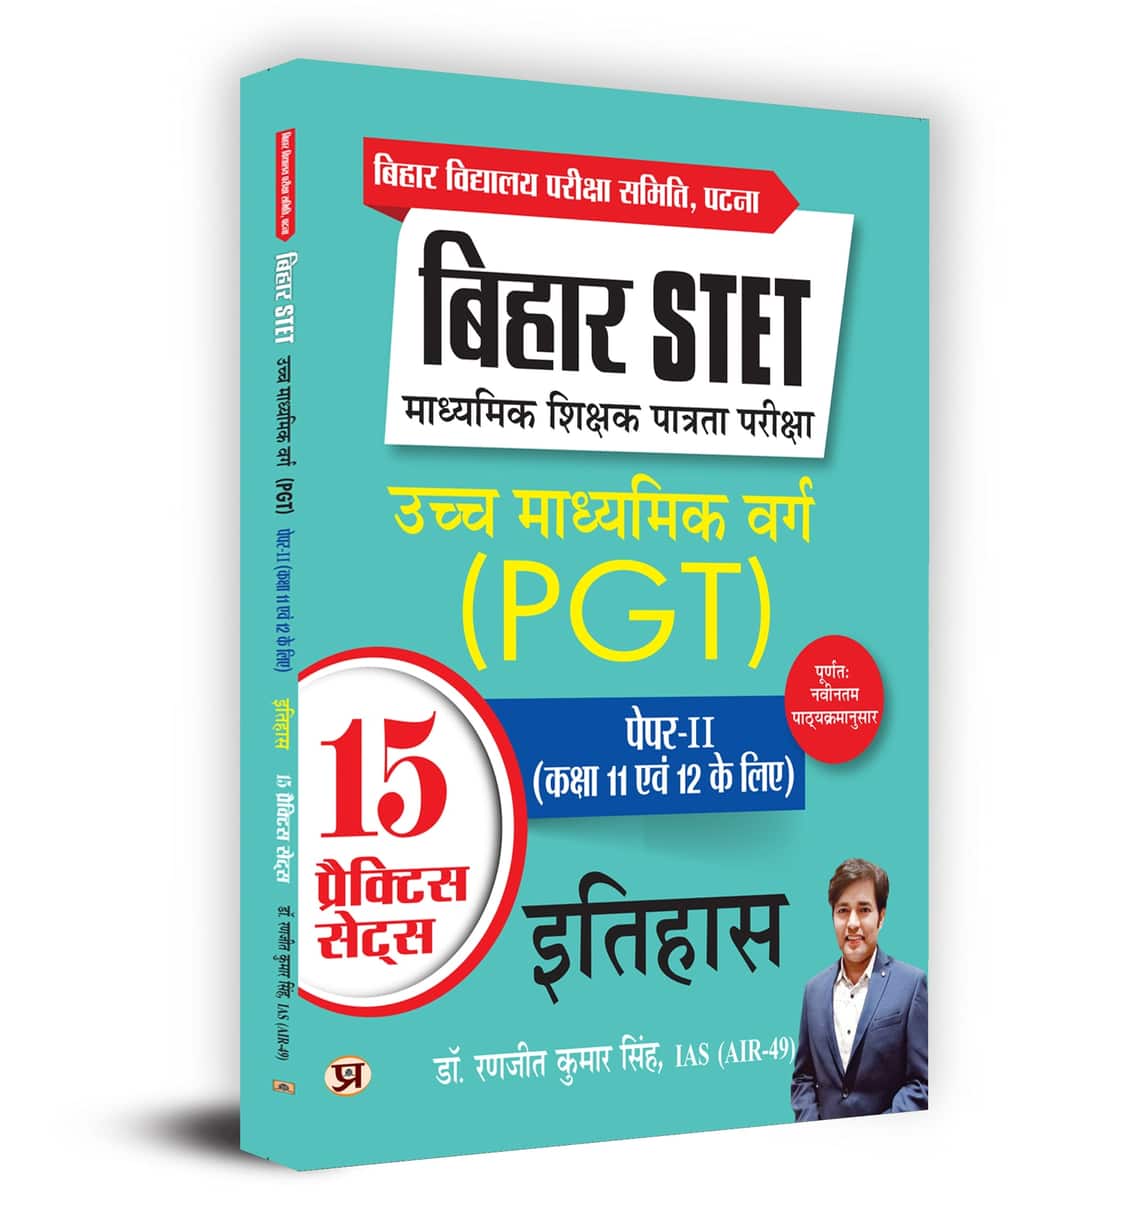 Bihar STET Madhyamik Shikshak Patrata Pariksha Uchch Madhyamik Varg Itihas (PGT) Paper-2 (Class 11 & 12) History 15 Practice Sets